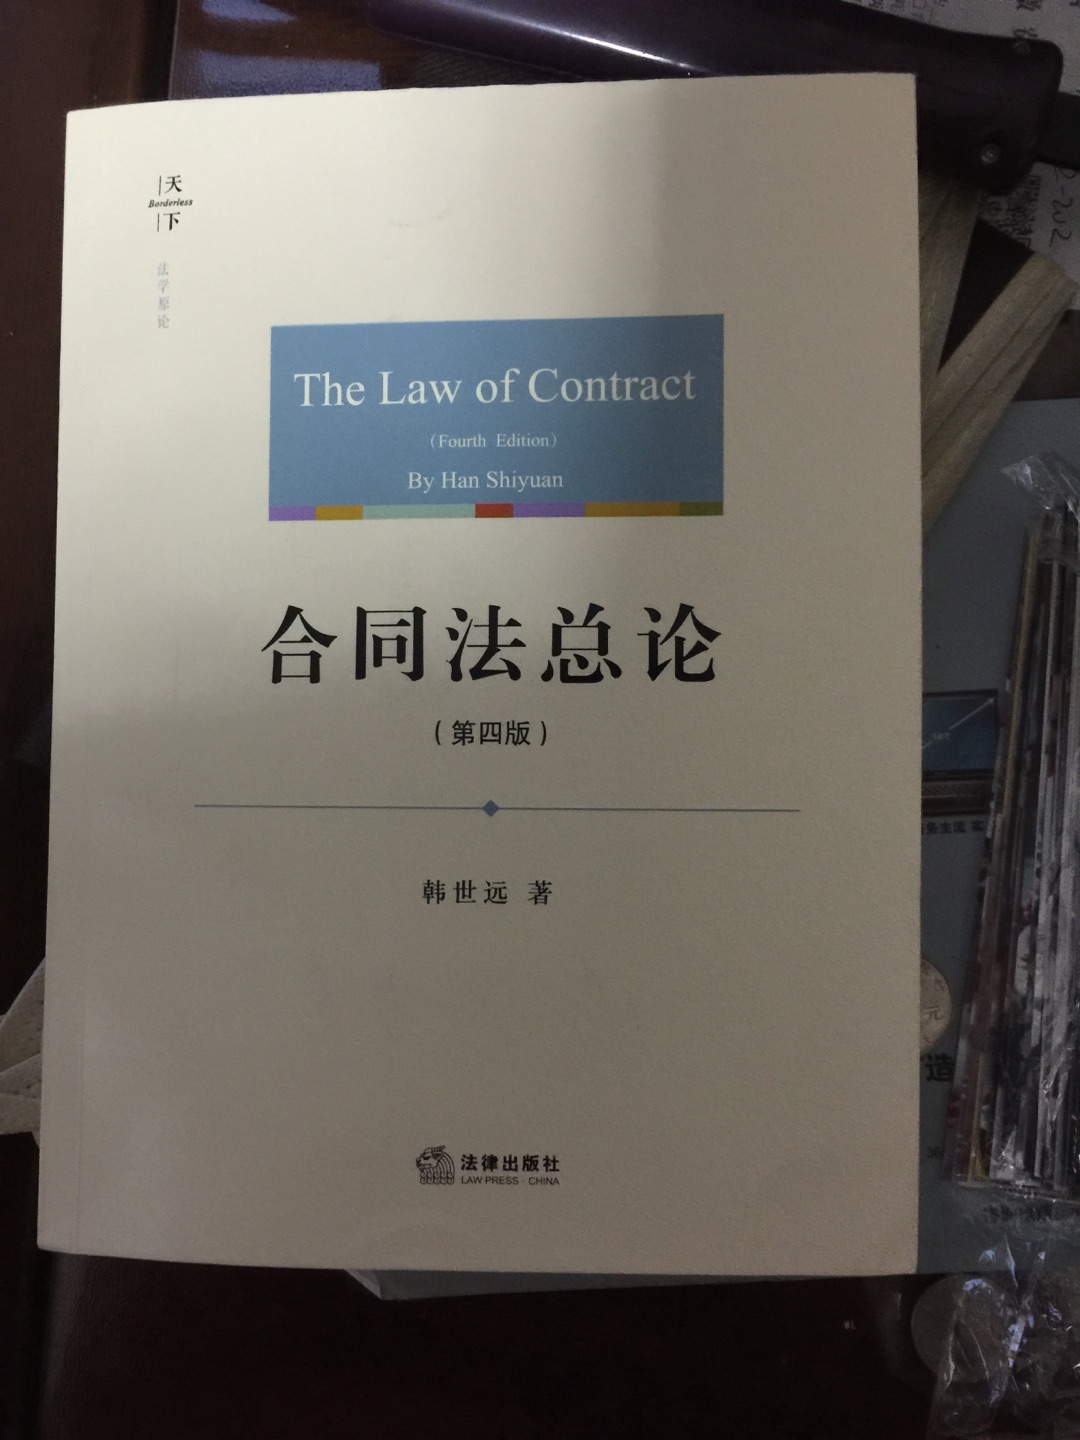 大学念的法学确没有从事法律职业，入这本书算是为了情怀啦！大学时读的是作者的老师崔建远的书